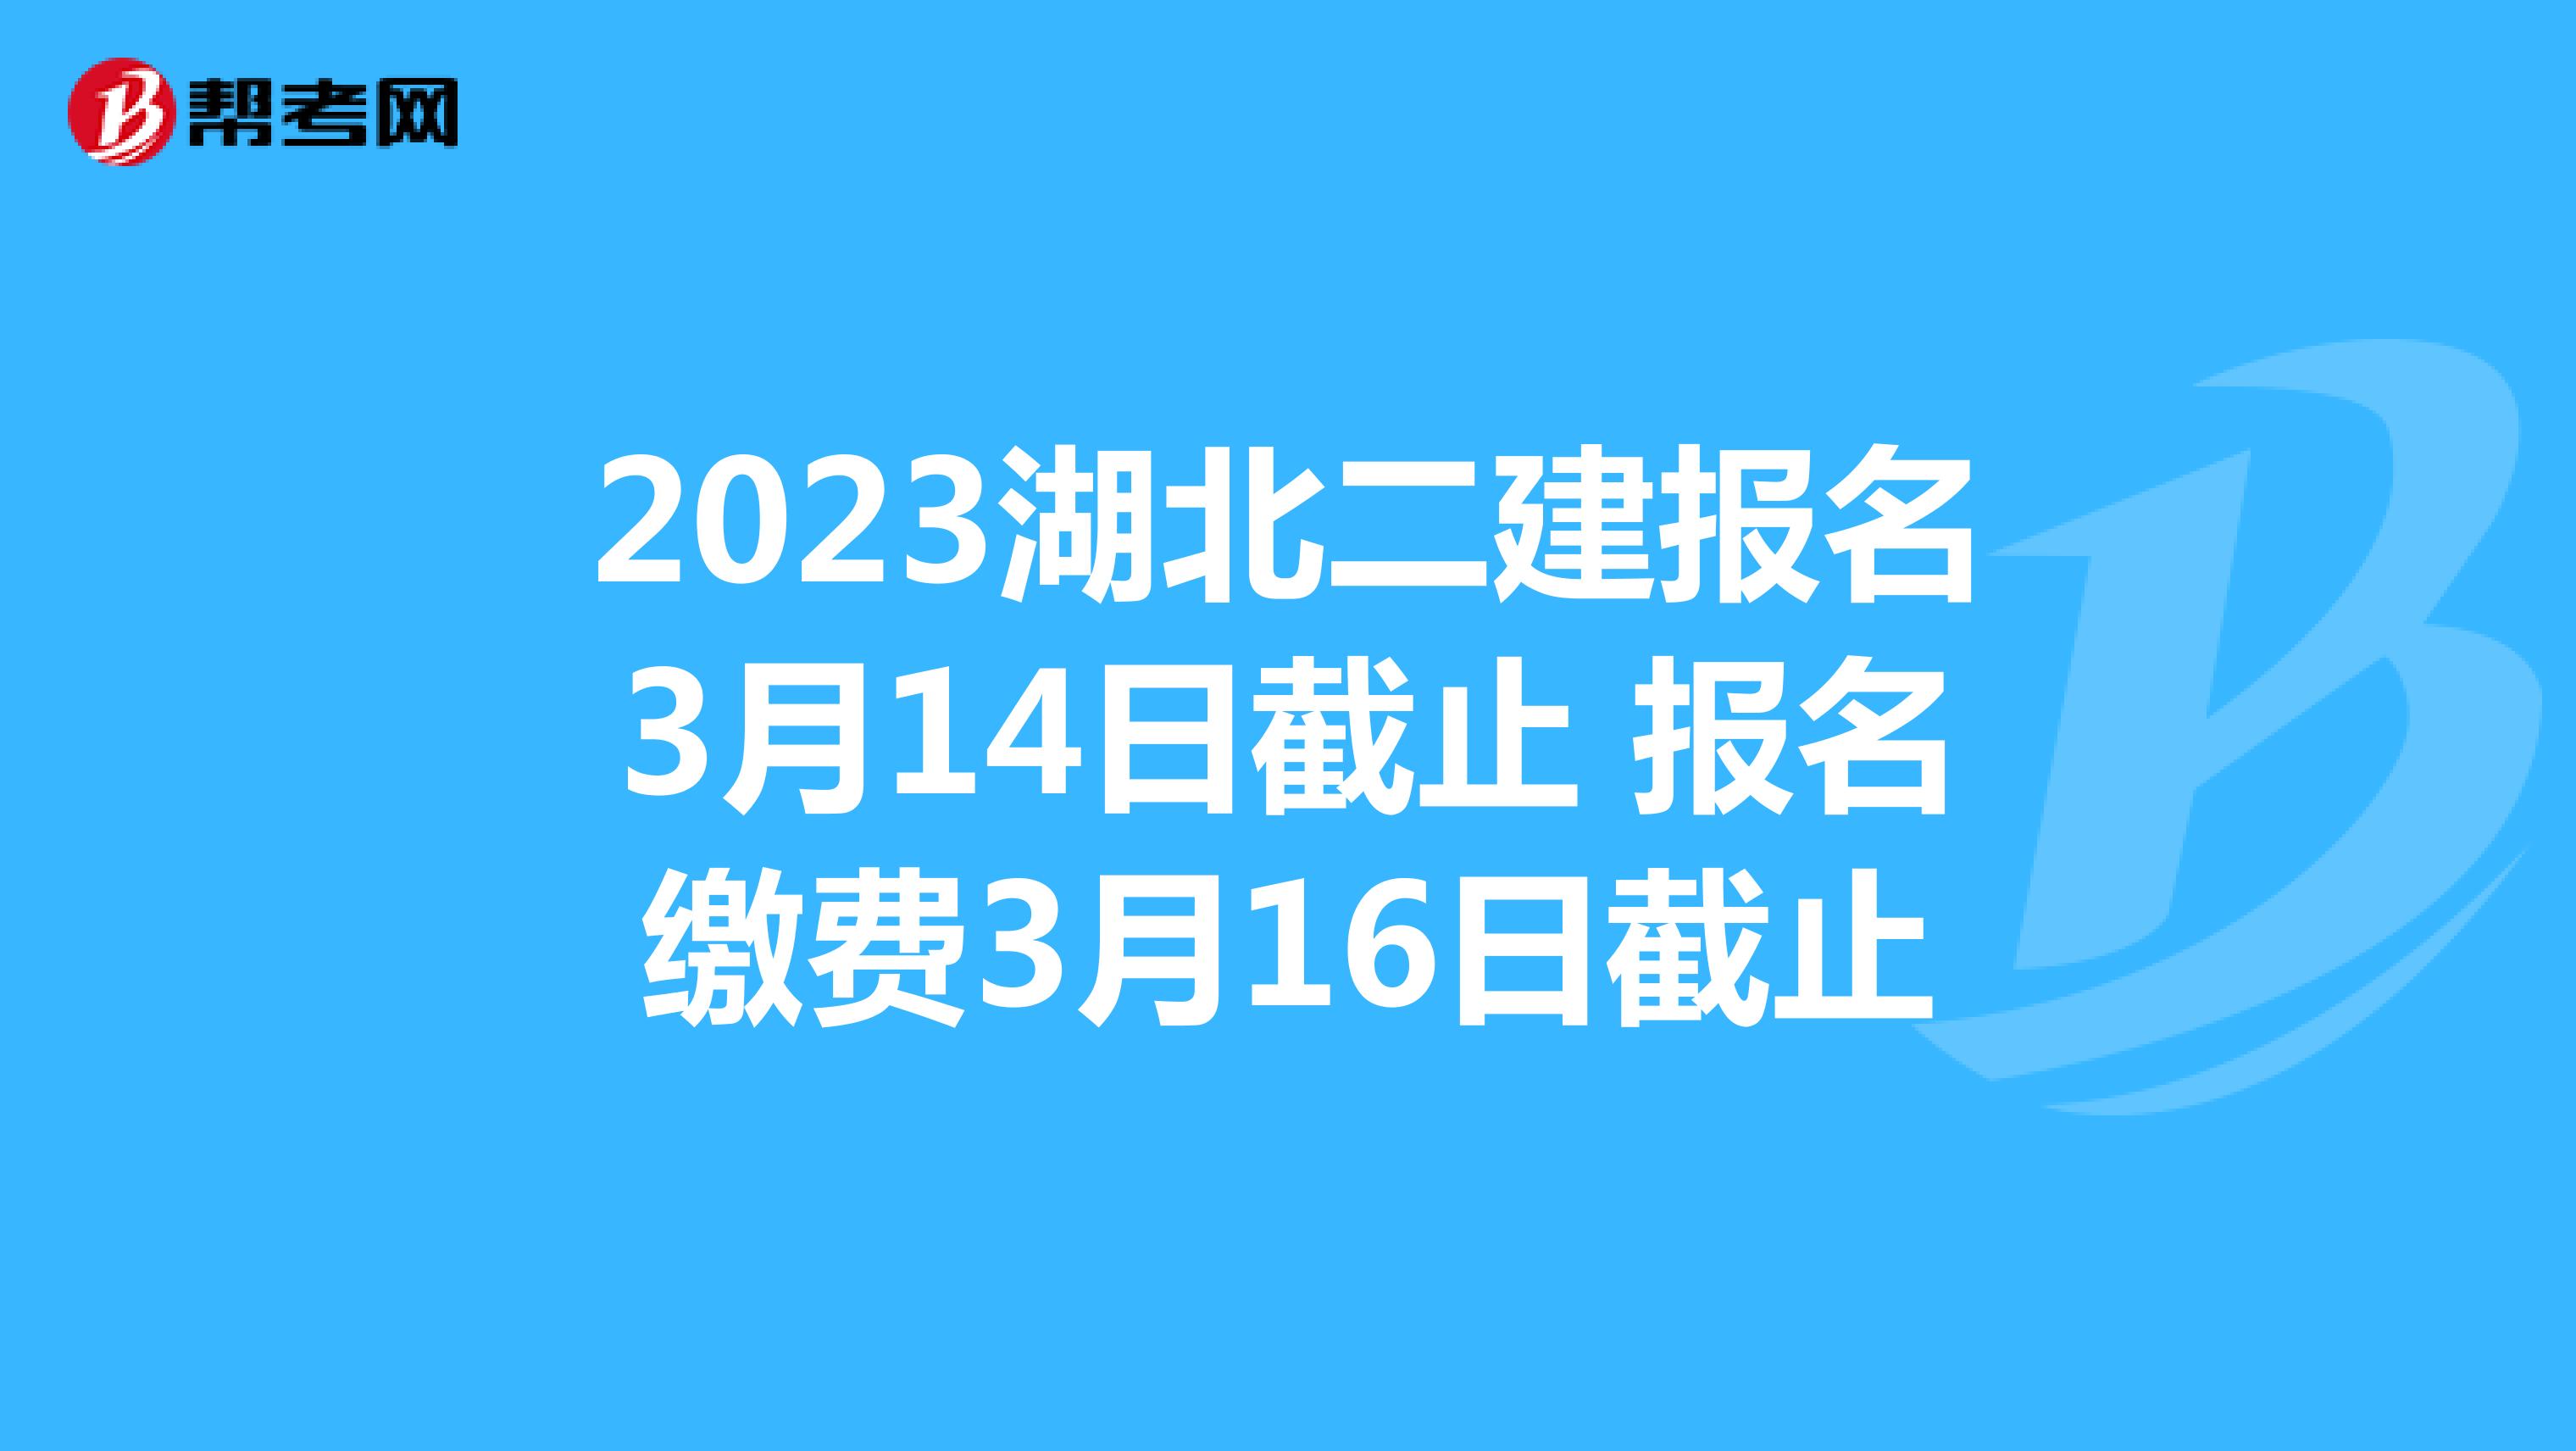 2023湖北二建报名3月14日截止 报名缴费3月16日截止